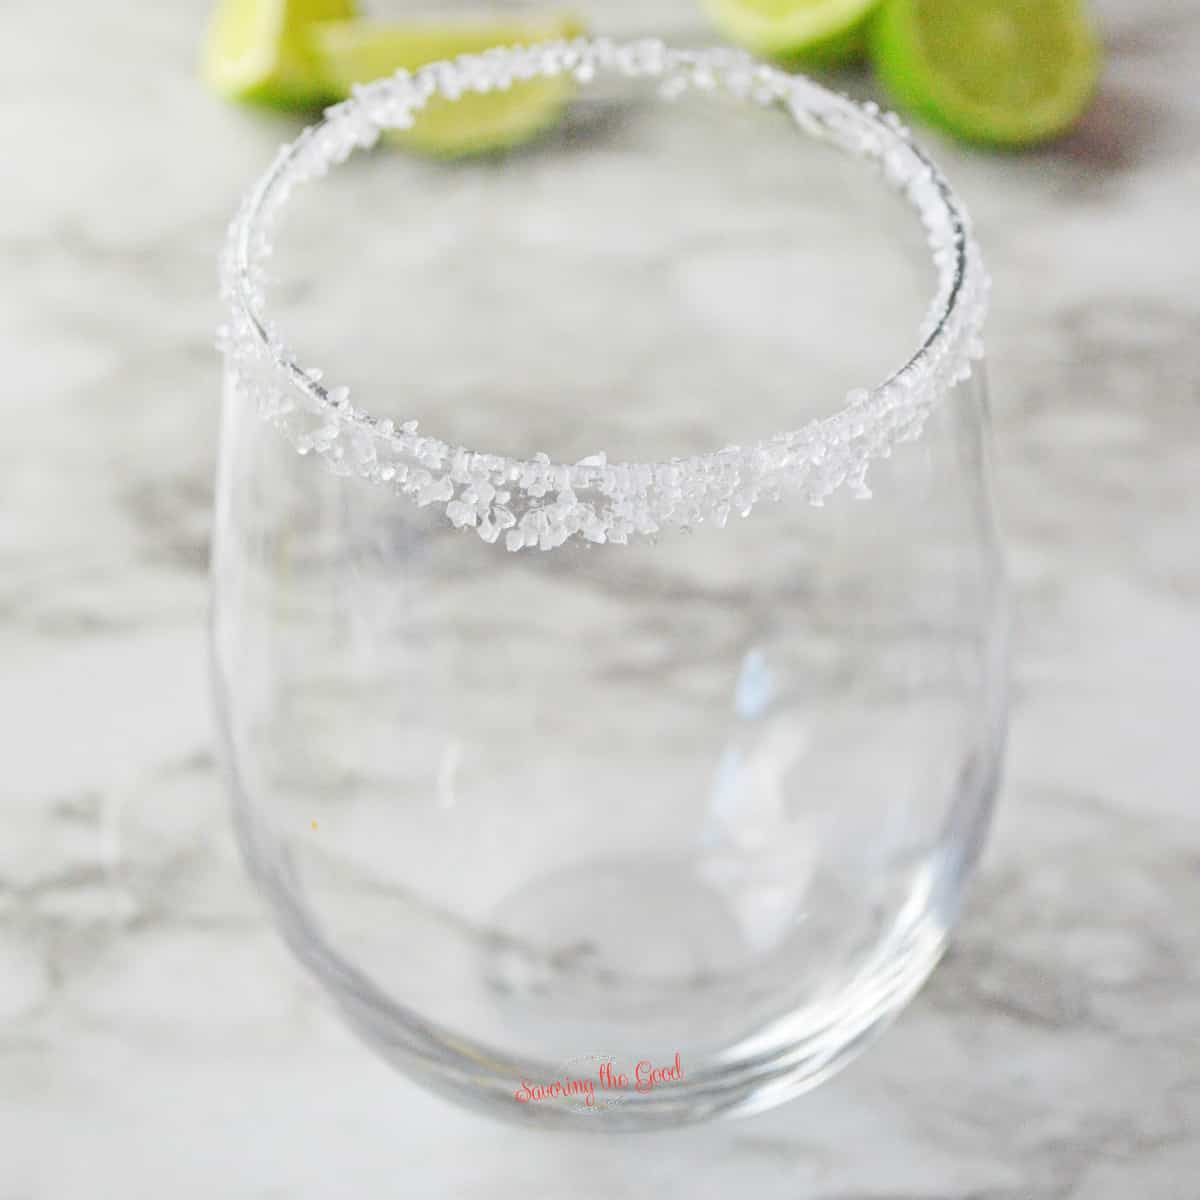 glass with a salt rim.